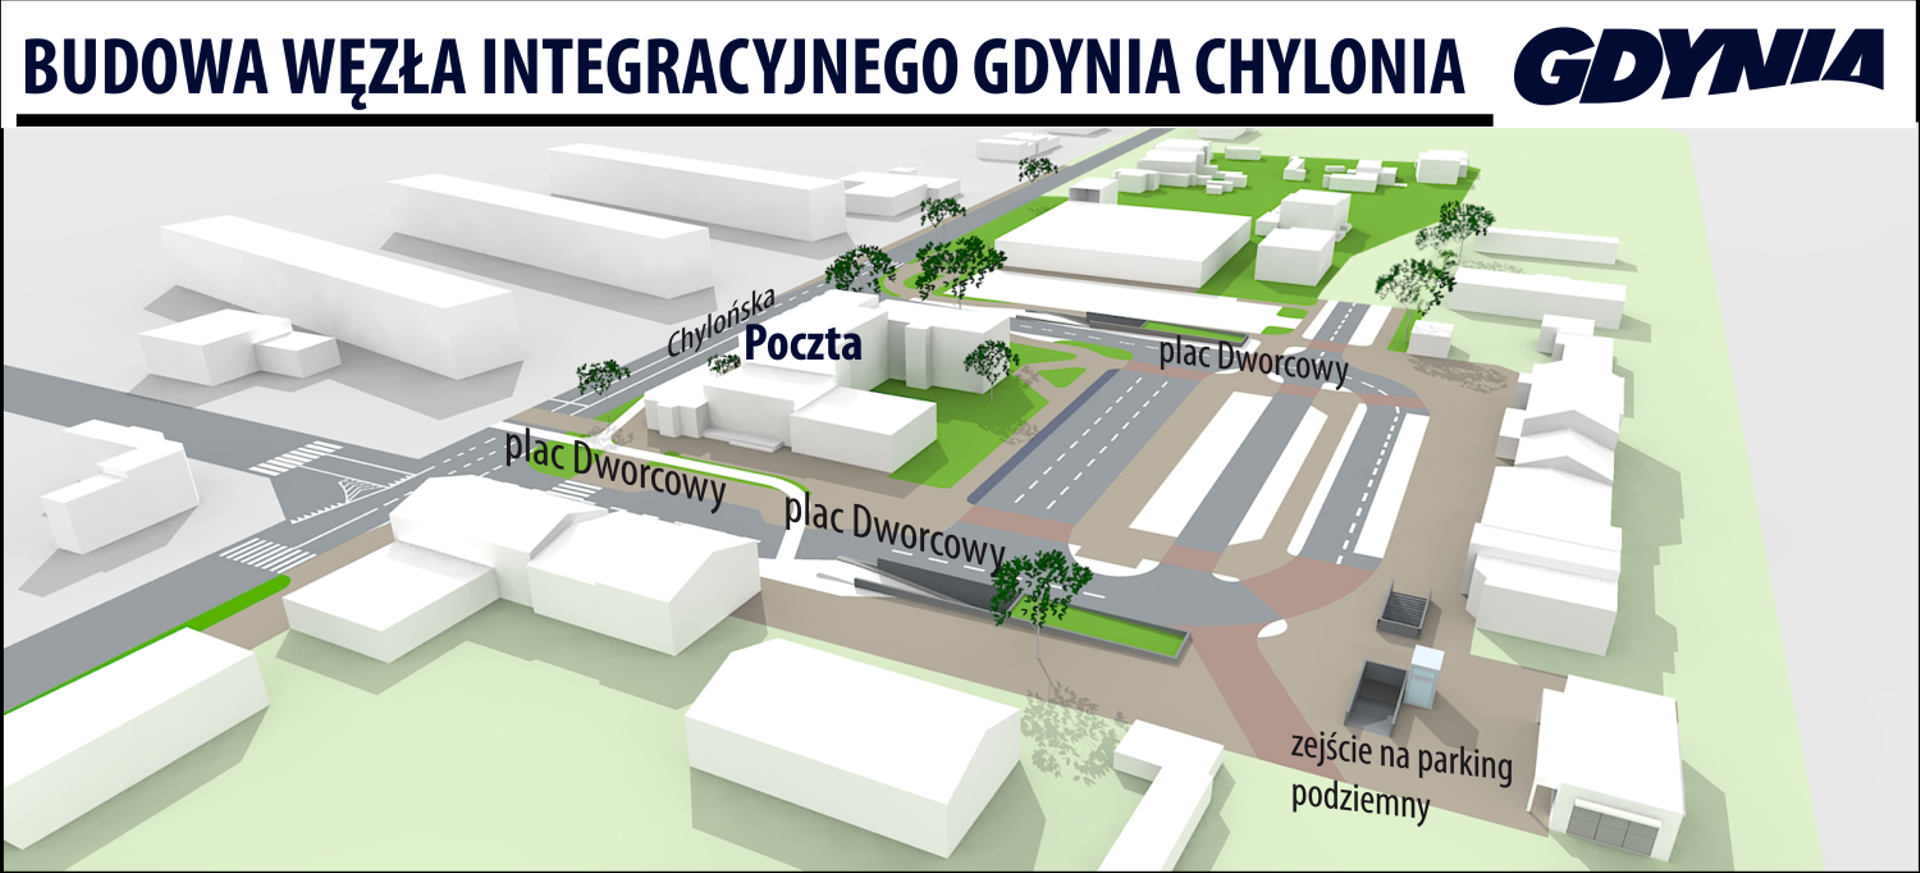  Budowa węzła integracyjnego w Gdyni-Chyloni weszła w kolejną fazę